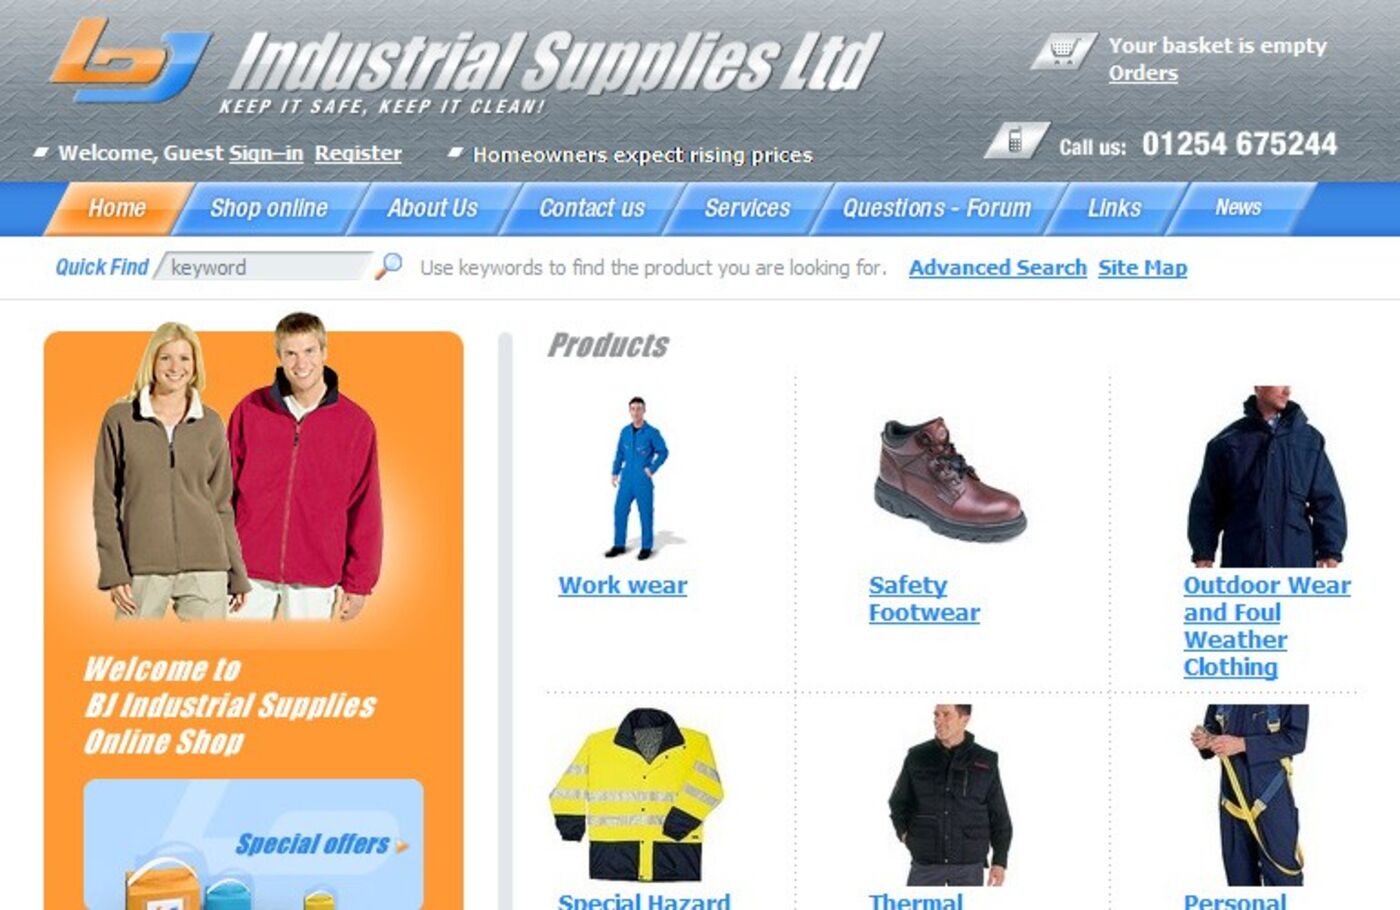 BJ Industrial Supplies Homepage header